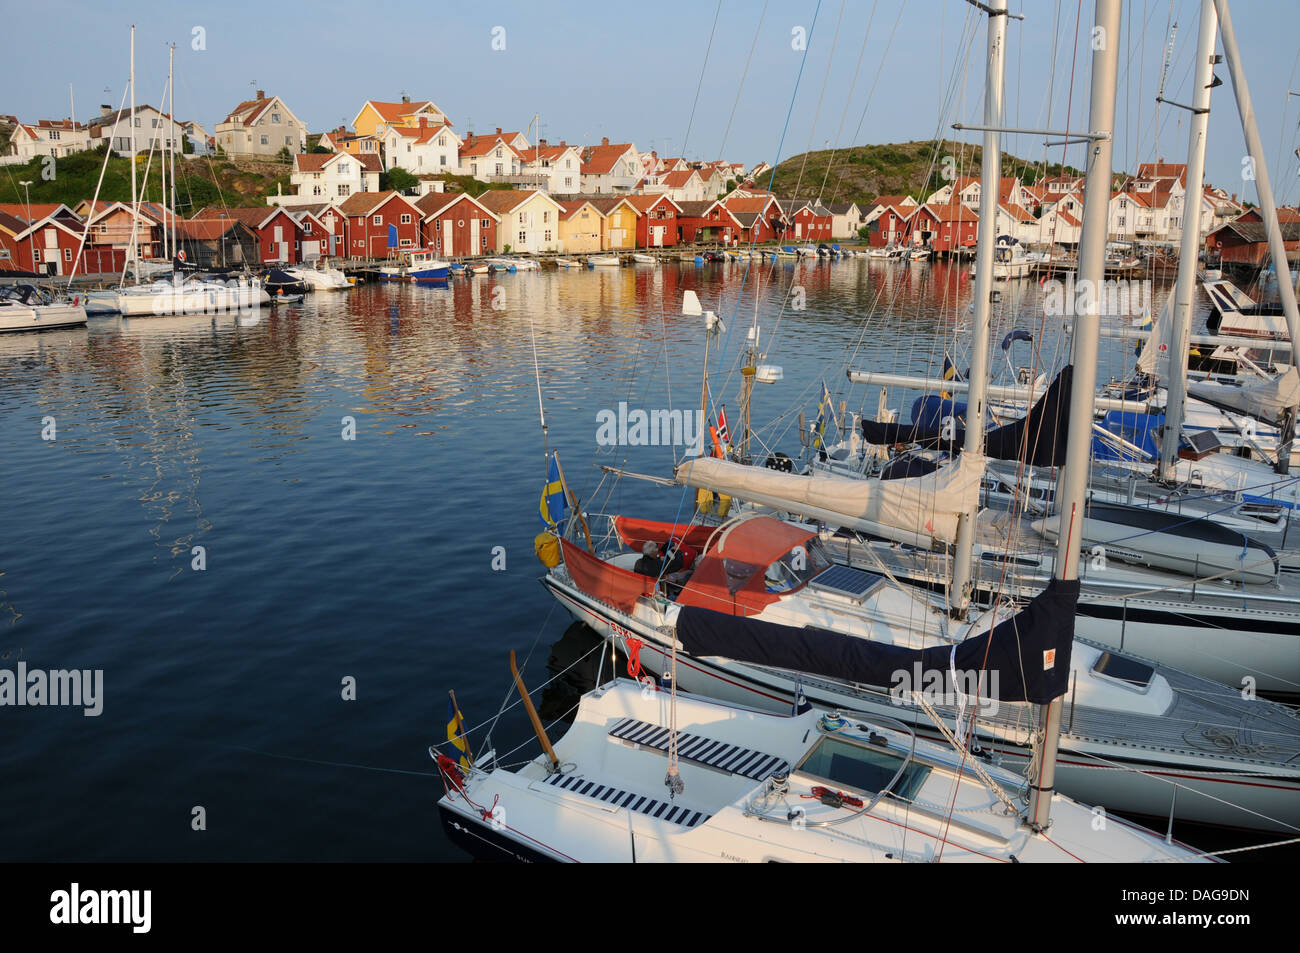 Village de pêche 0f Grundsund sur la côte ouest de la Suède avec des yachts, les quais, les hangars à bateaux en bois et maisons colorées Banque D'Images